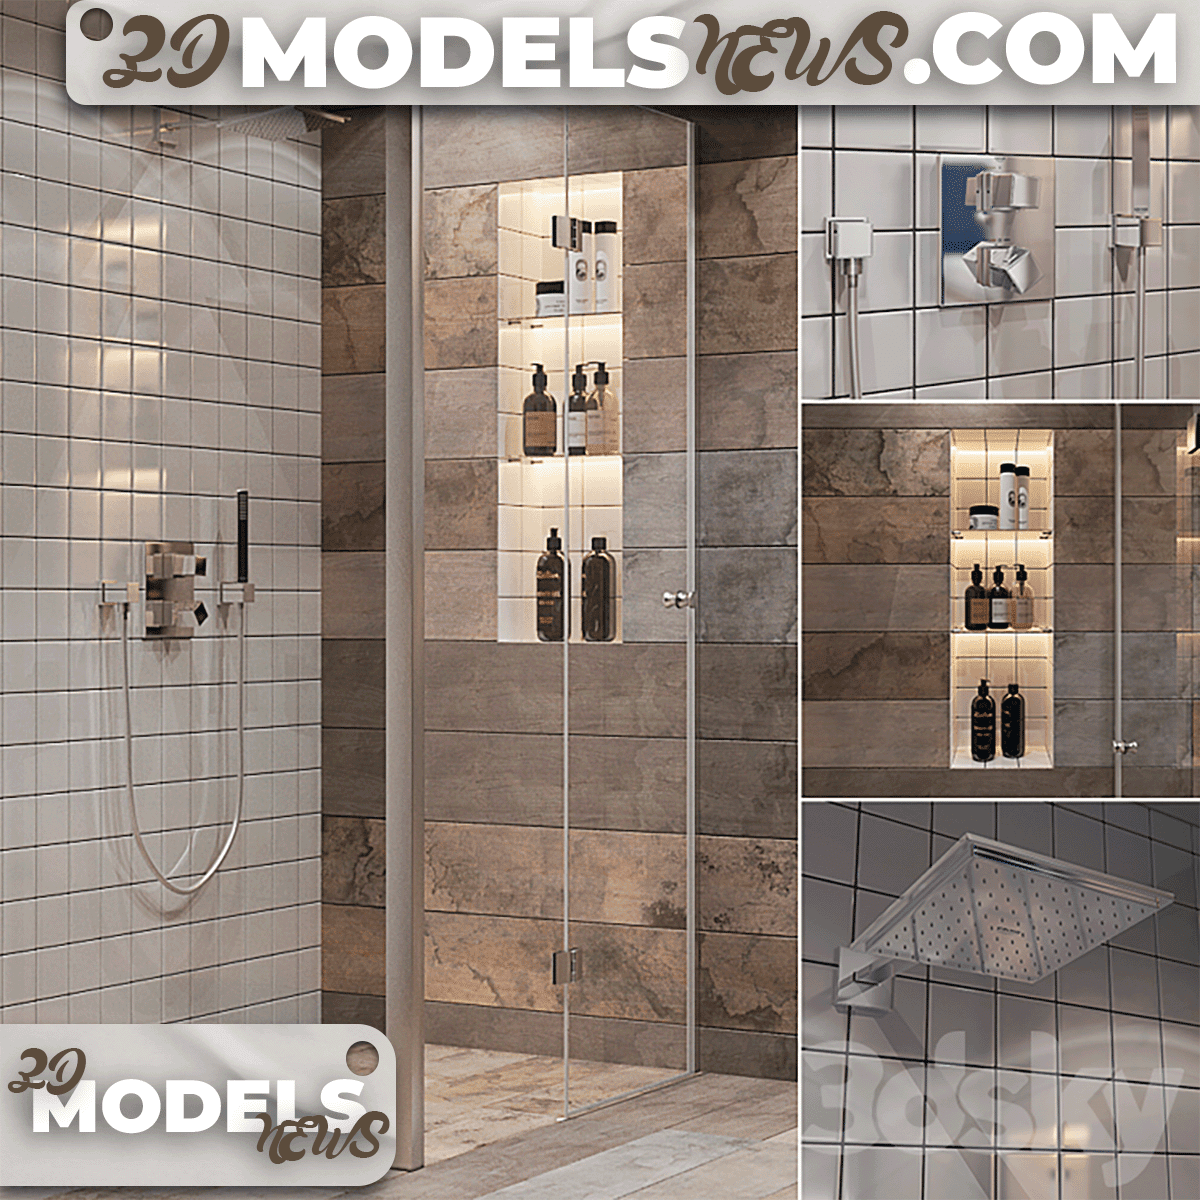 Bathroom Shower Model Set Part 2 1